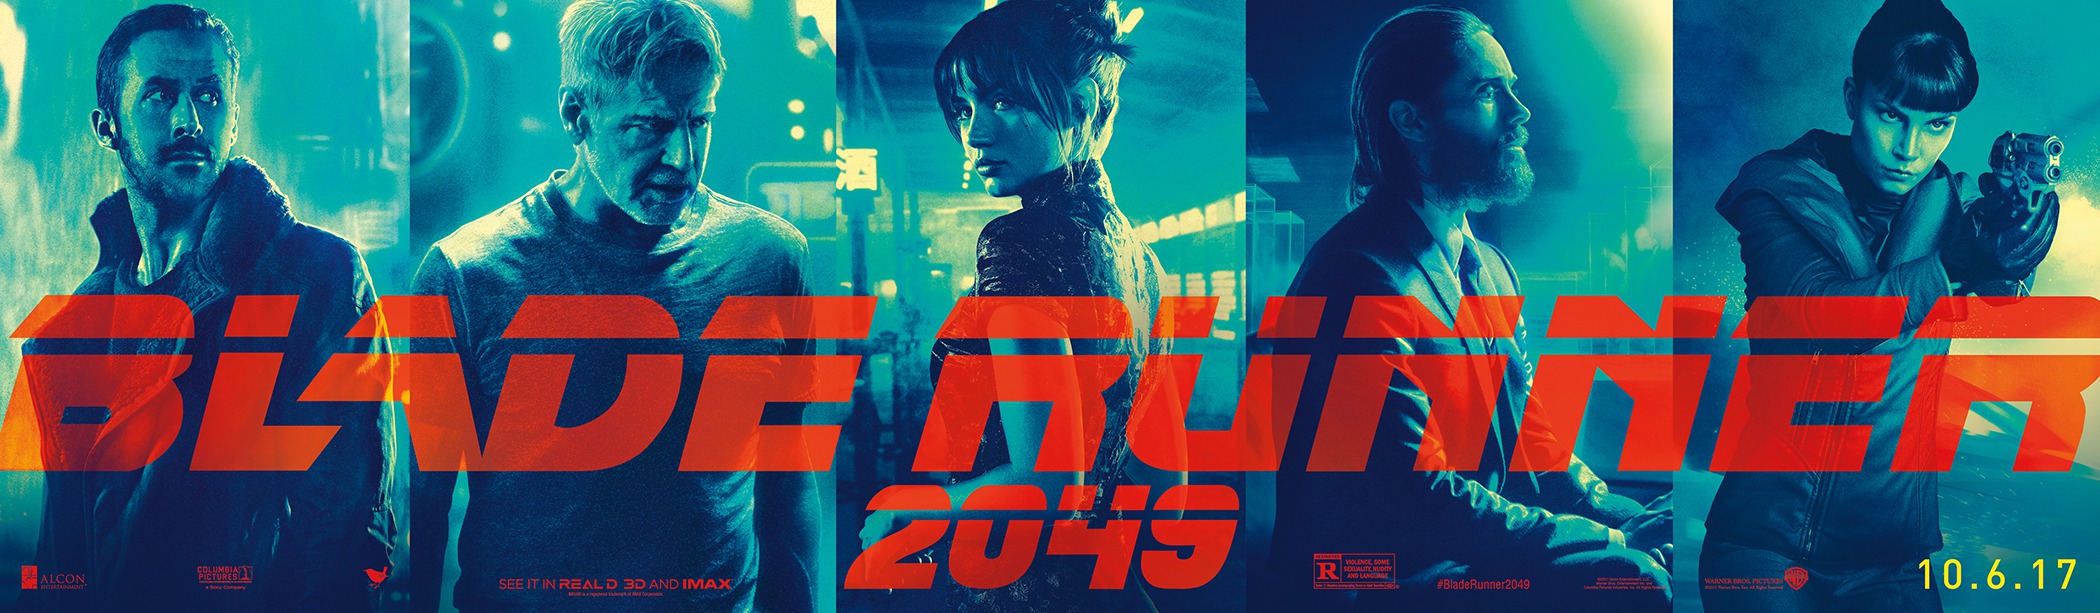 Mega Sized Movie Poster Image for Blade Runner 2049 (#22 of 32)